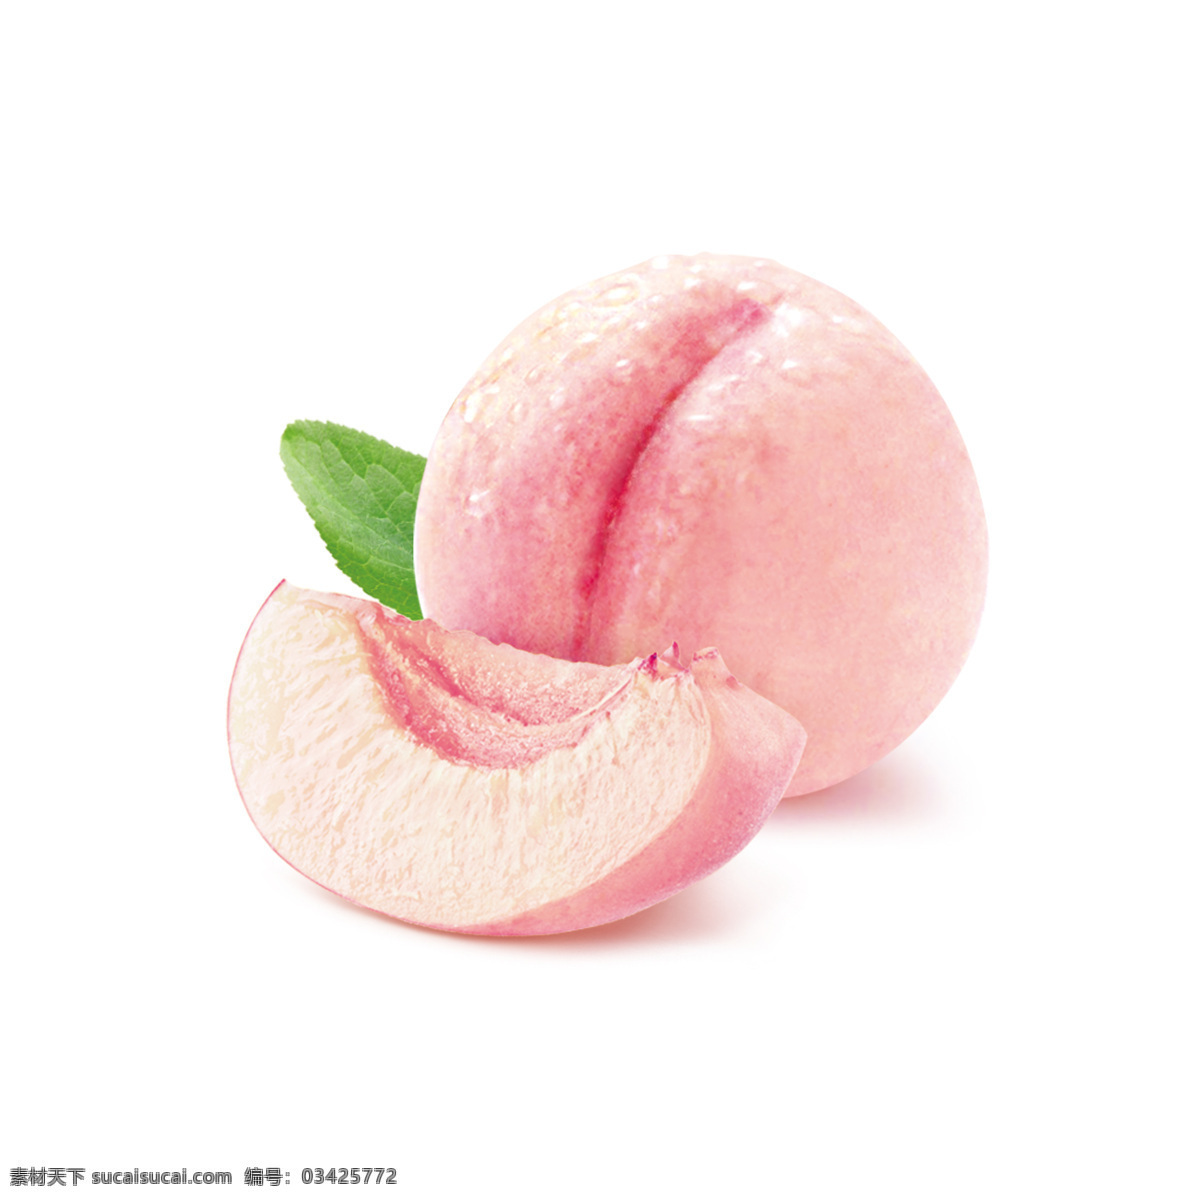 粉色桃子素材 桃子 粉桃 切开桃子 桃子素材 可爱桃子